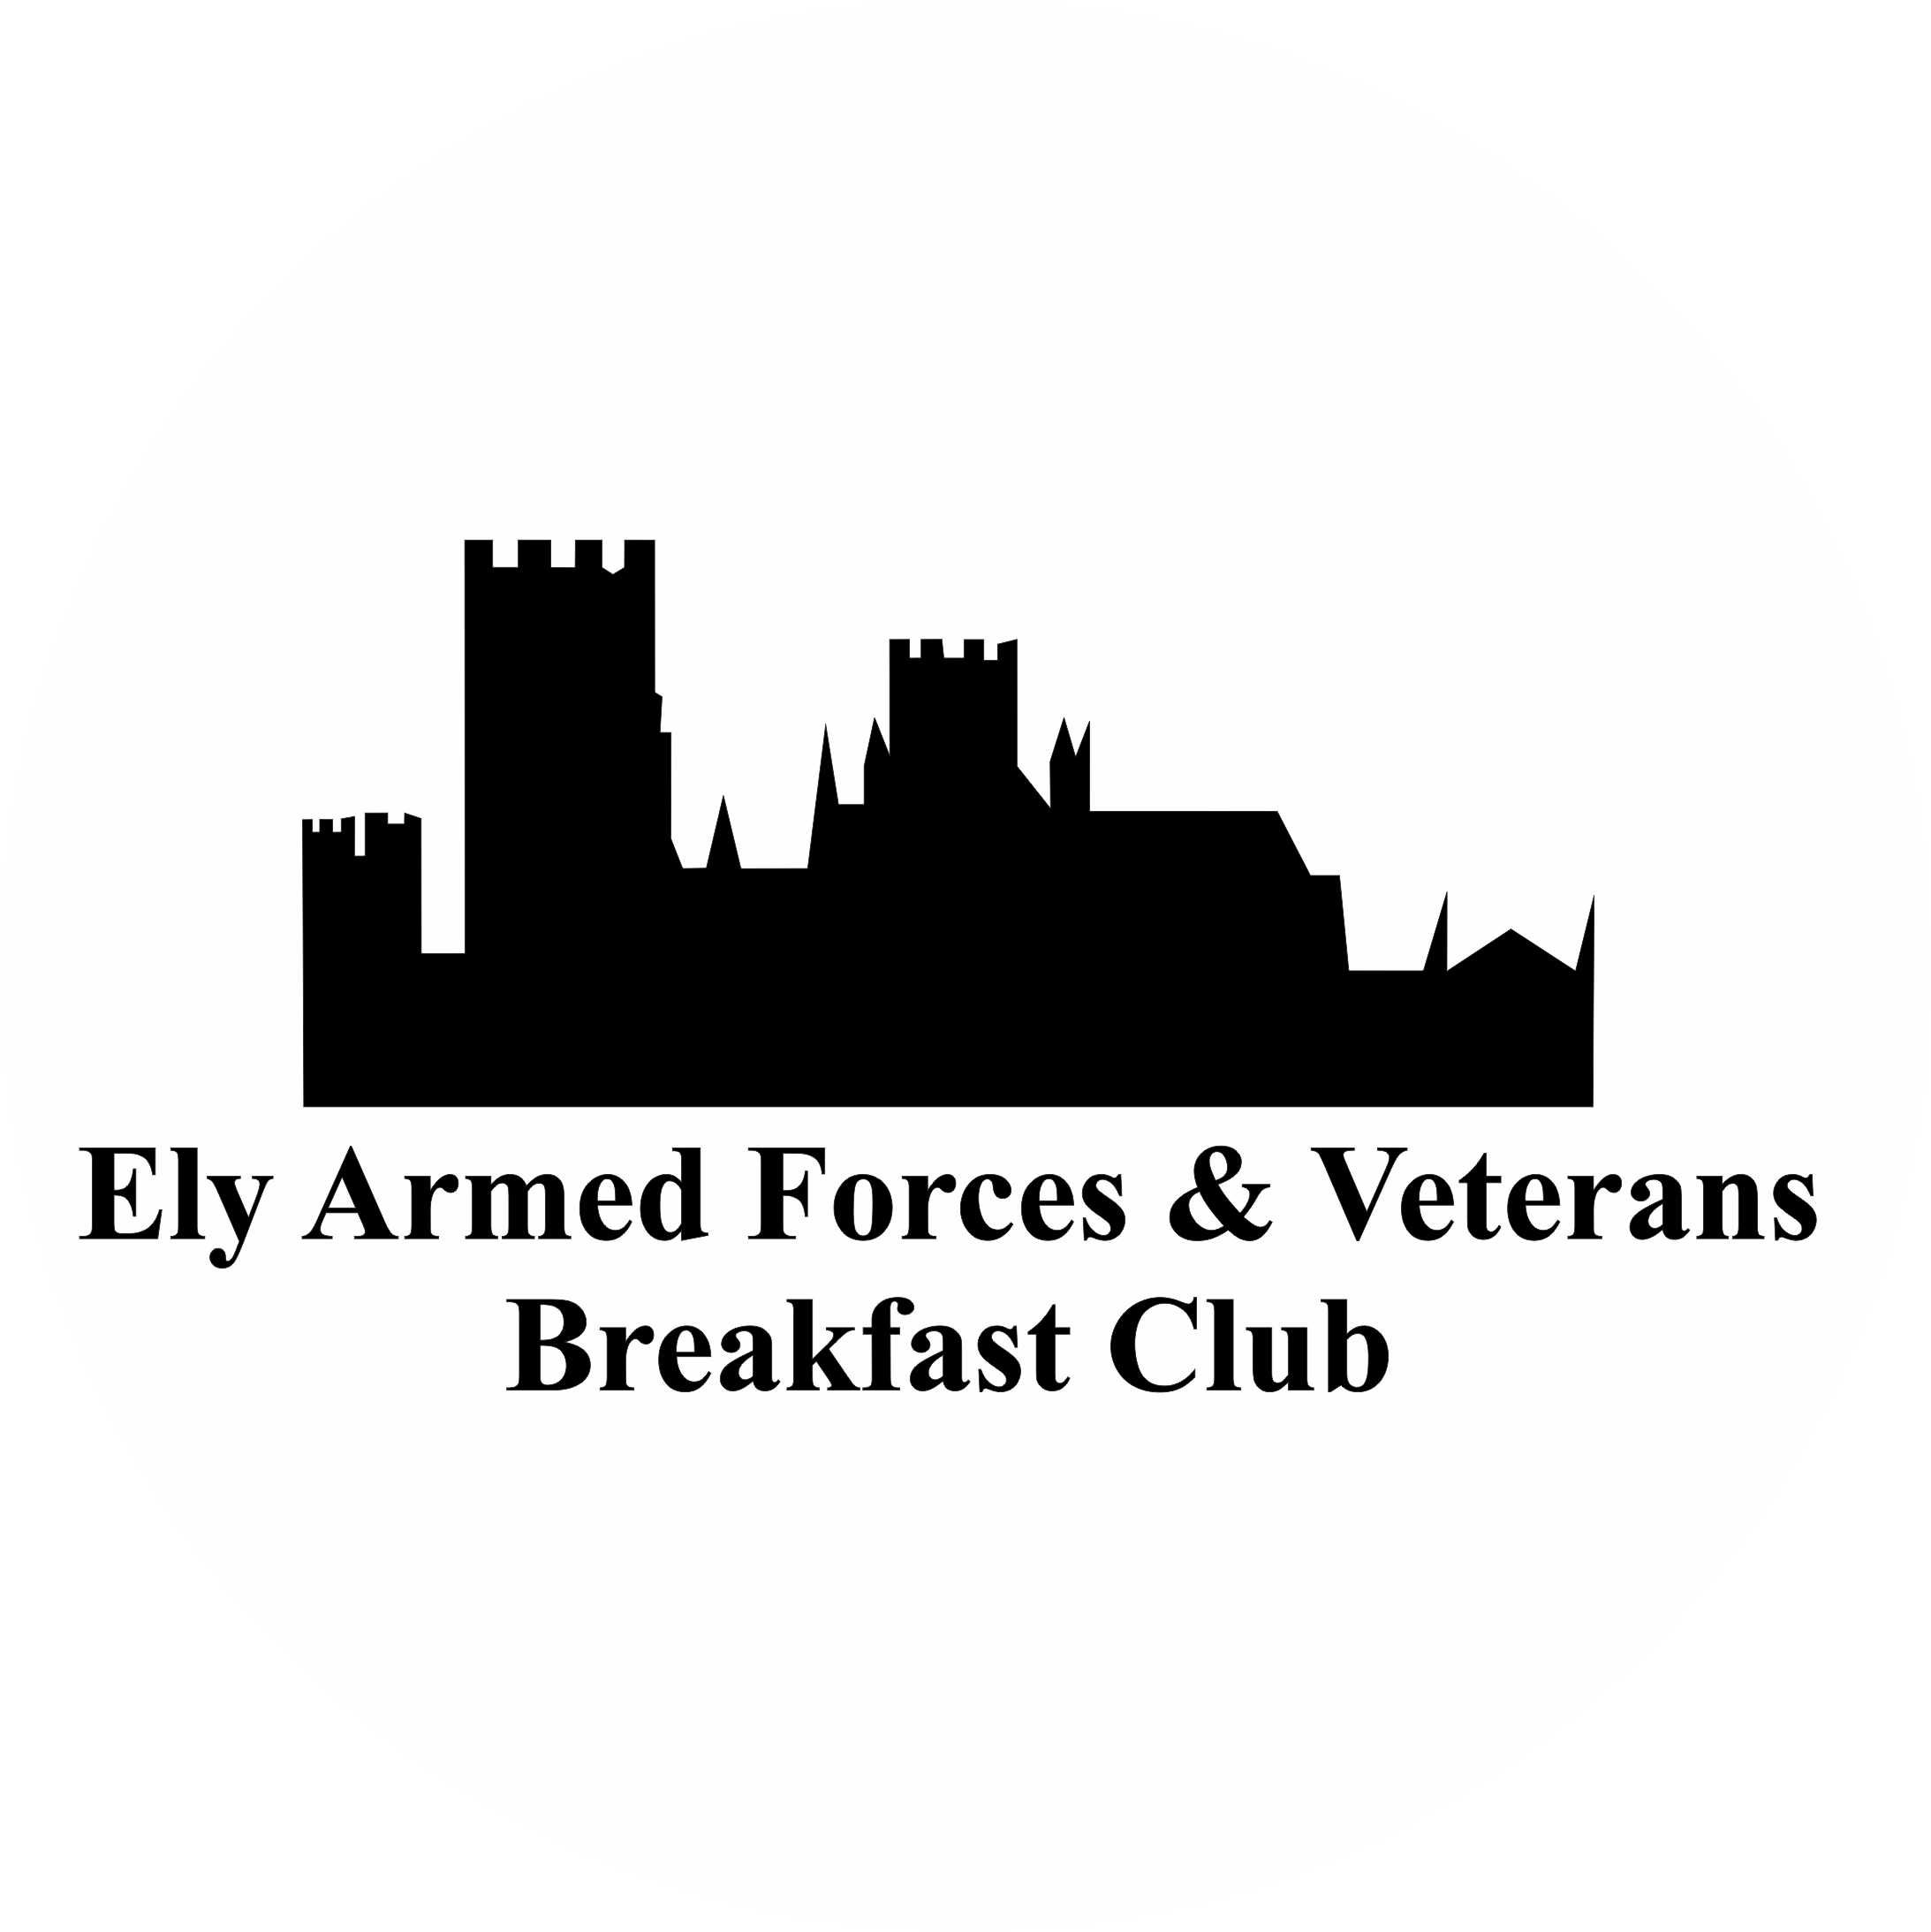 Les Wilson - Ely Armed Forces & Veterans Breakfast Club